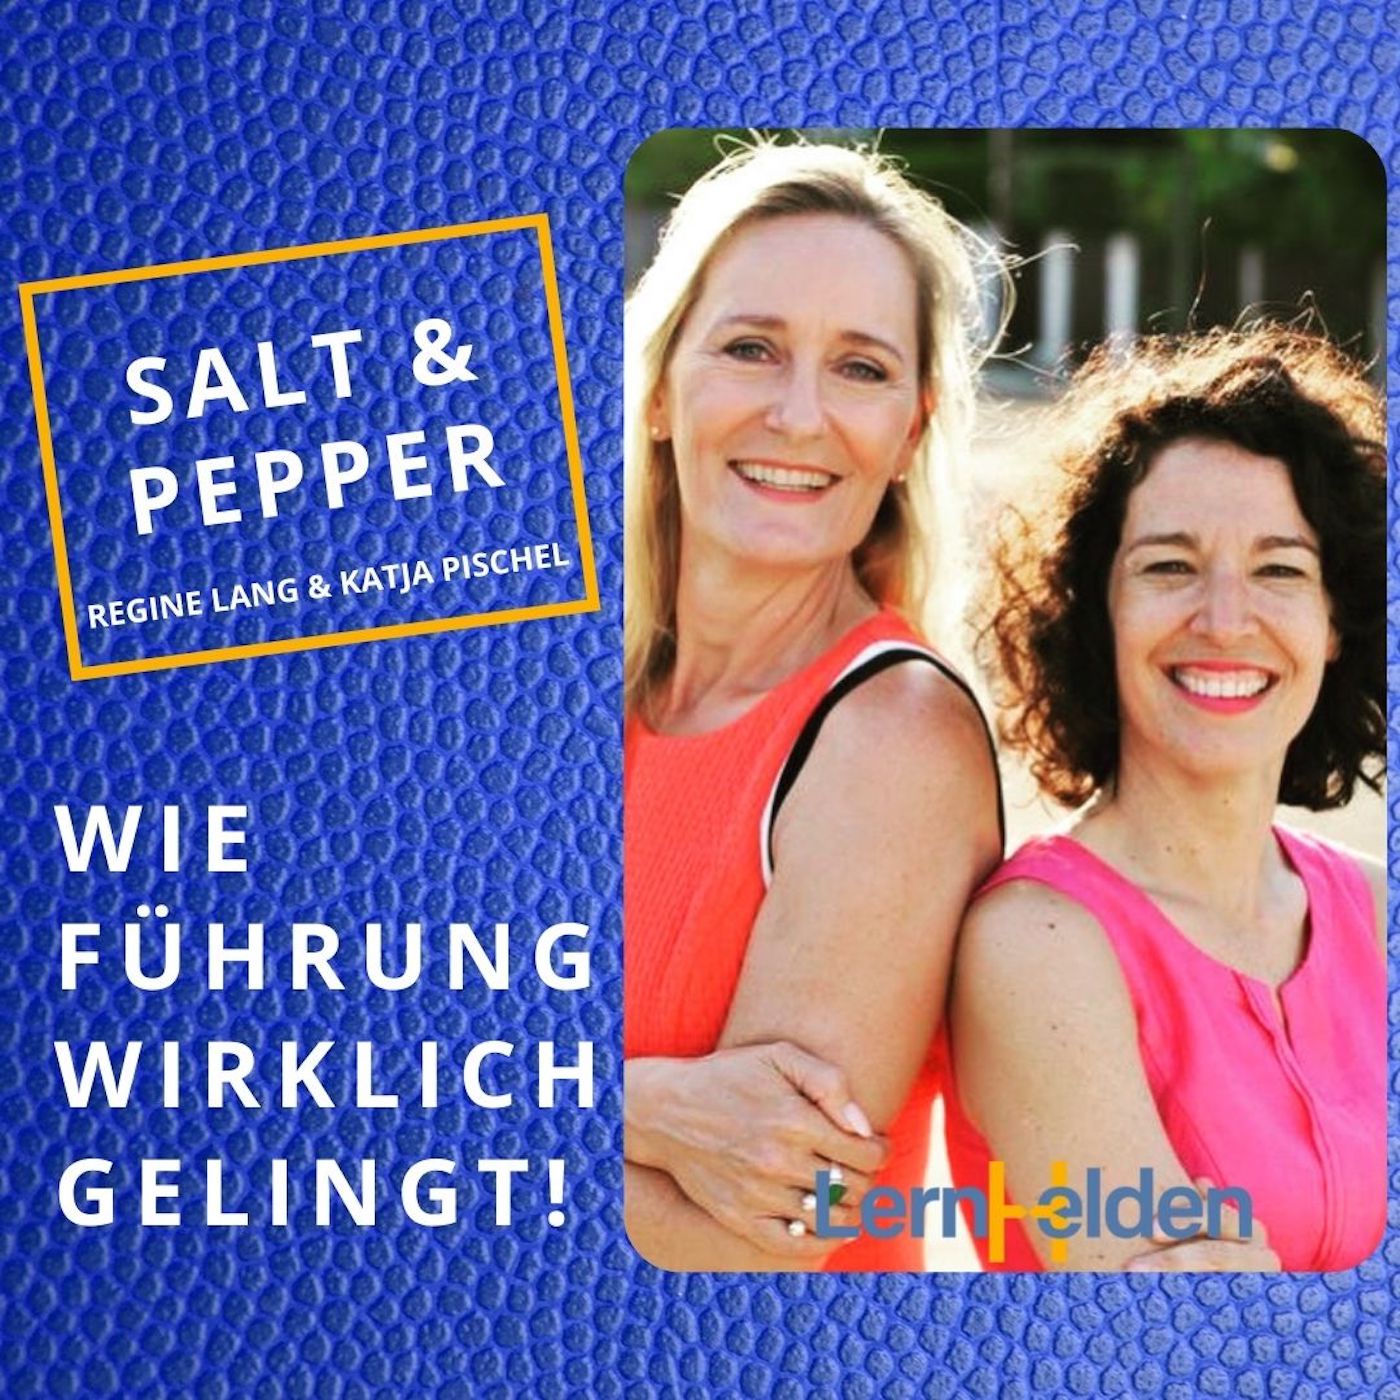 Salt & Pepper - Salz und Pfeffer für eine gelungene Führung!